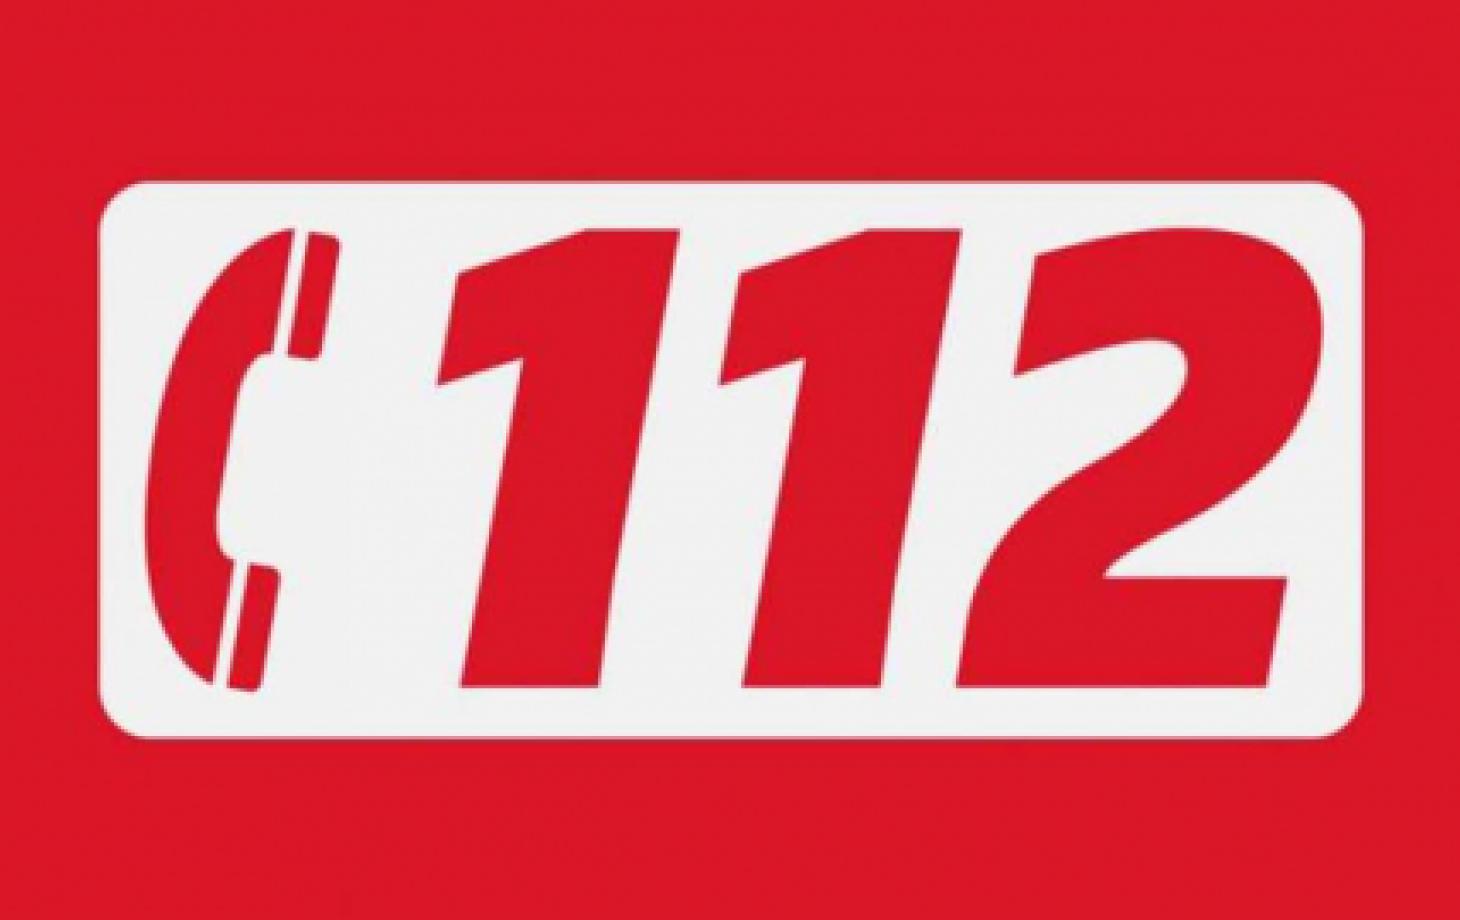 Вызывать пожарных, полицию или «скорую» теперь нужно по номеру 112 | СП -  Новости Бельцы Молдова